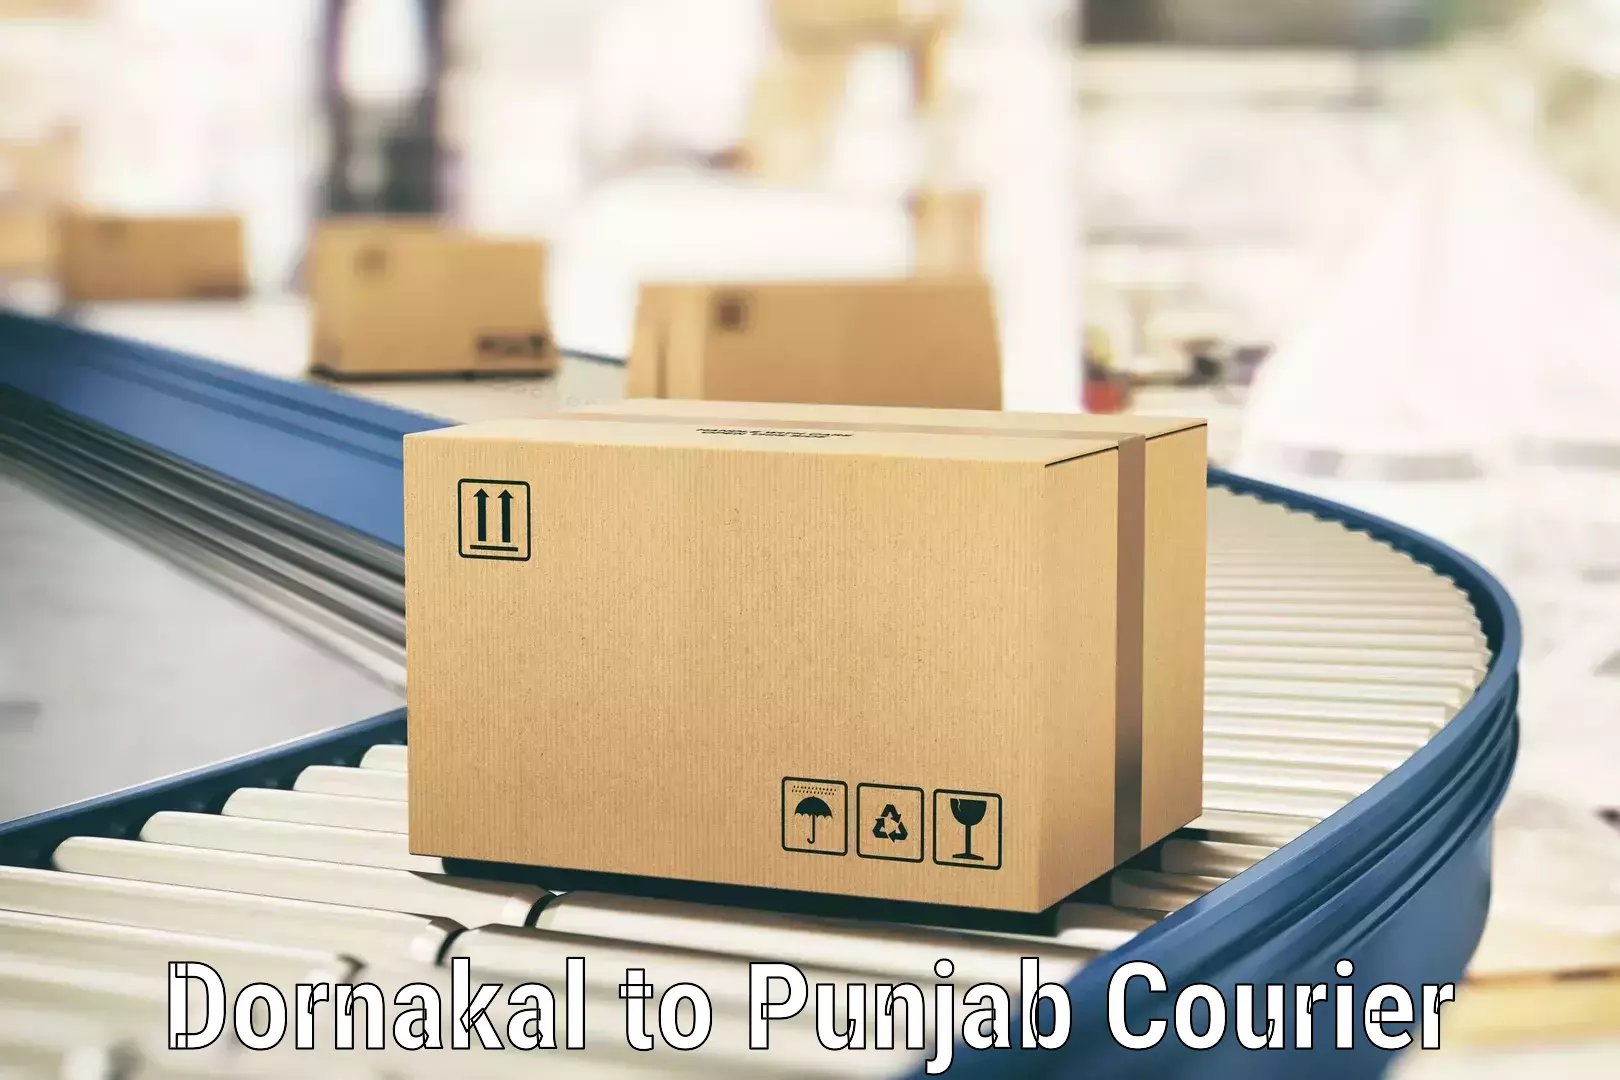 Flexible courier rates Dornakal to Kotkapura